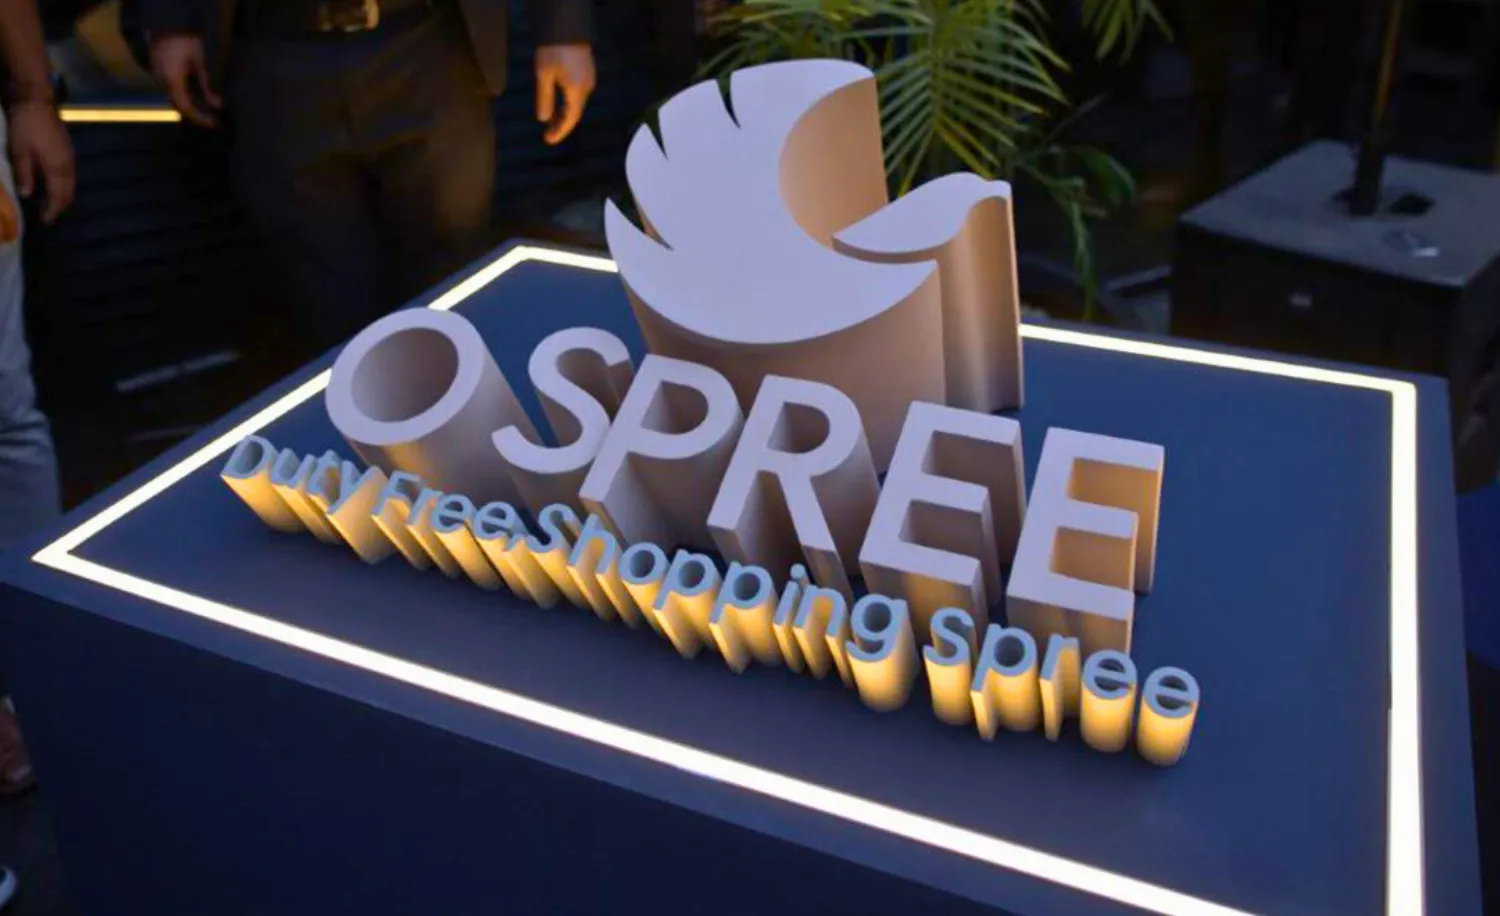 Mumbai Travel Retail is now Ospree